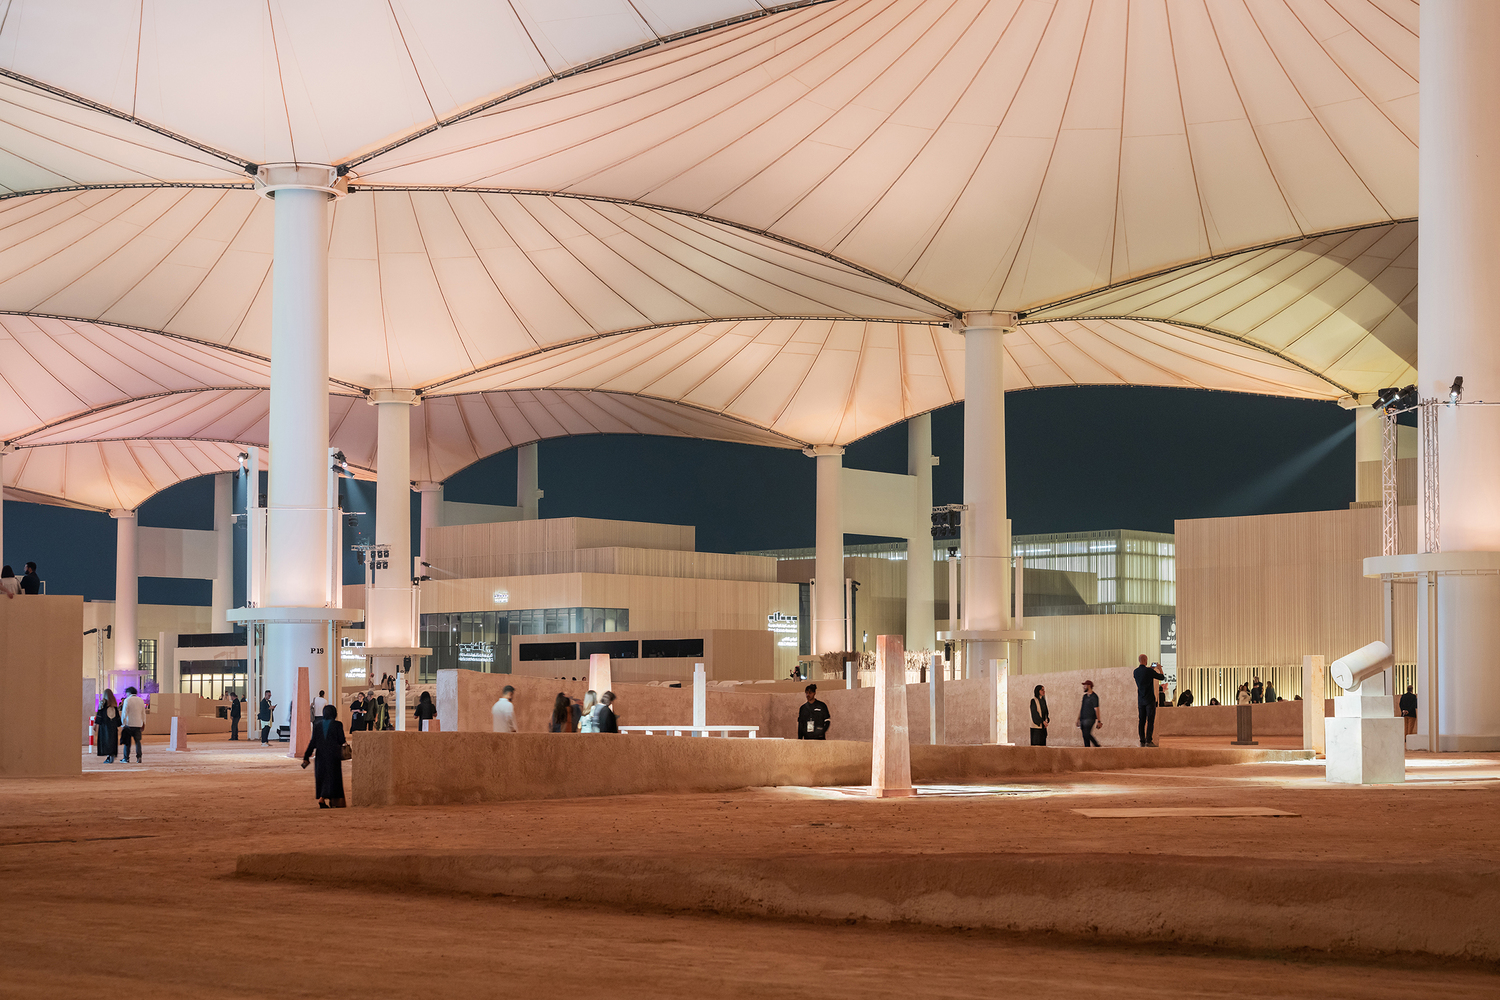 Outdoor Area of Islamic Arts Biennale in Jeddah